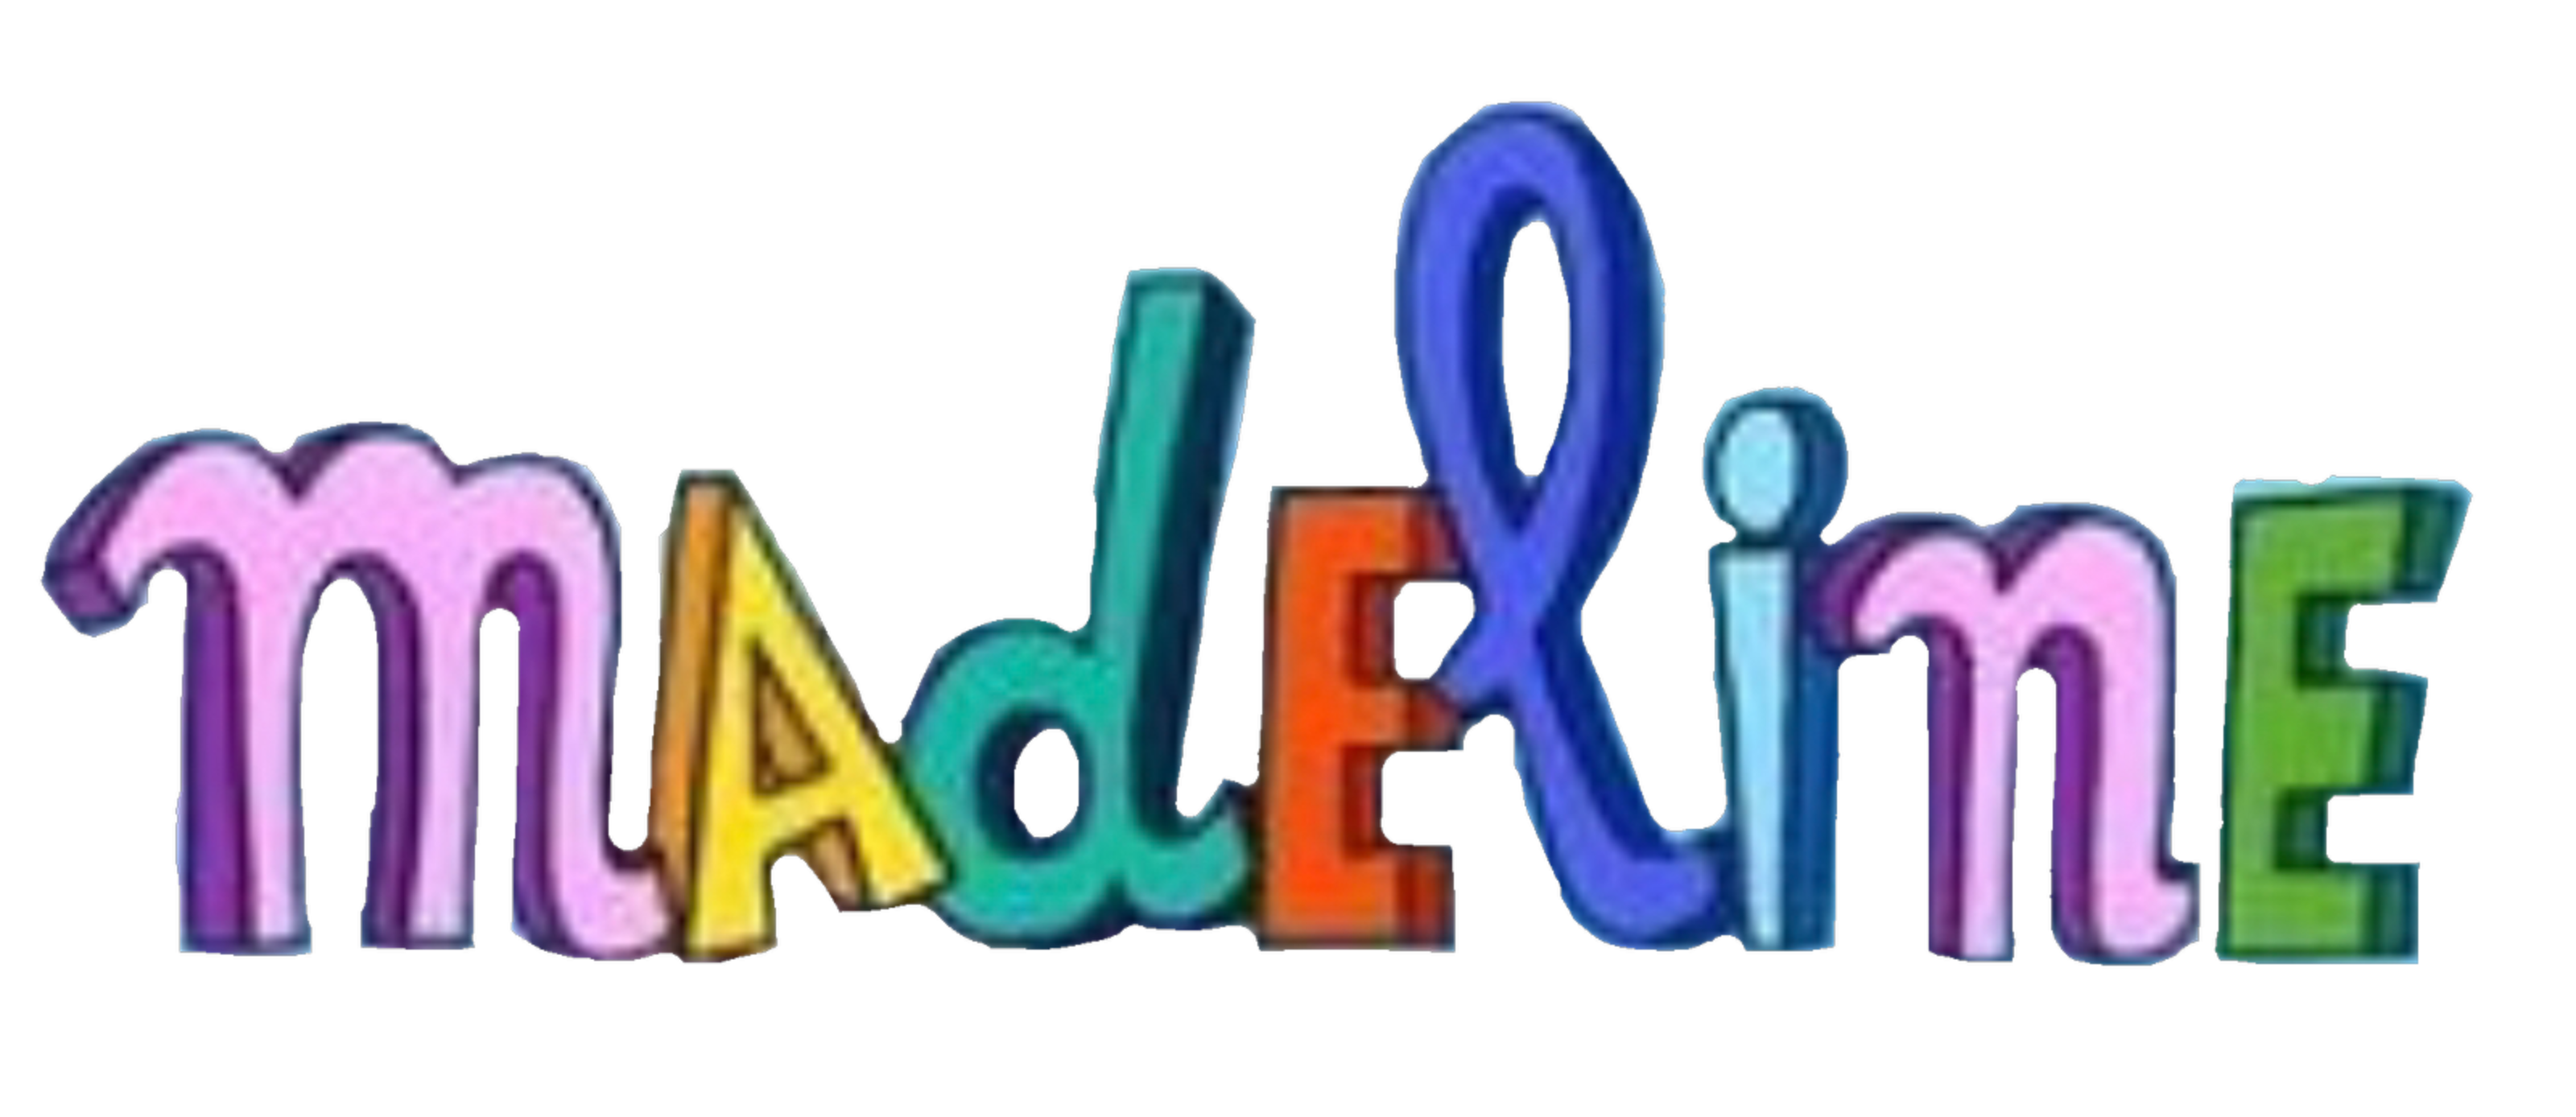 Madeline (8 DVDs Box Set)